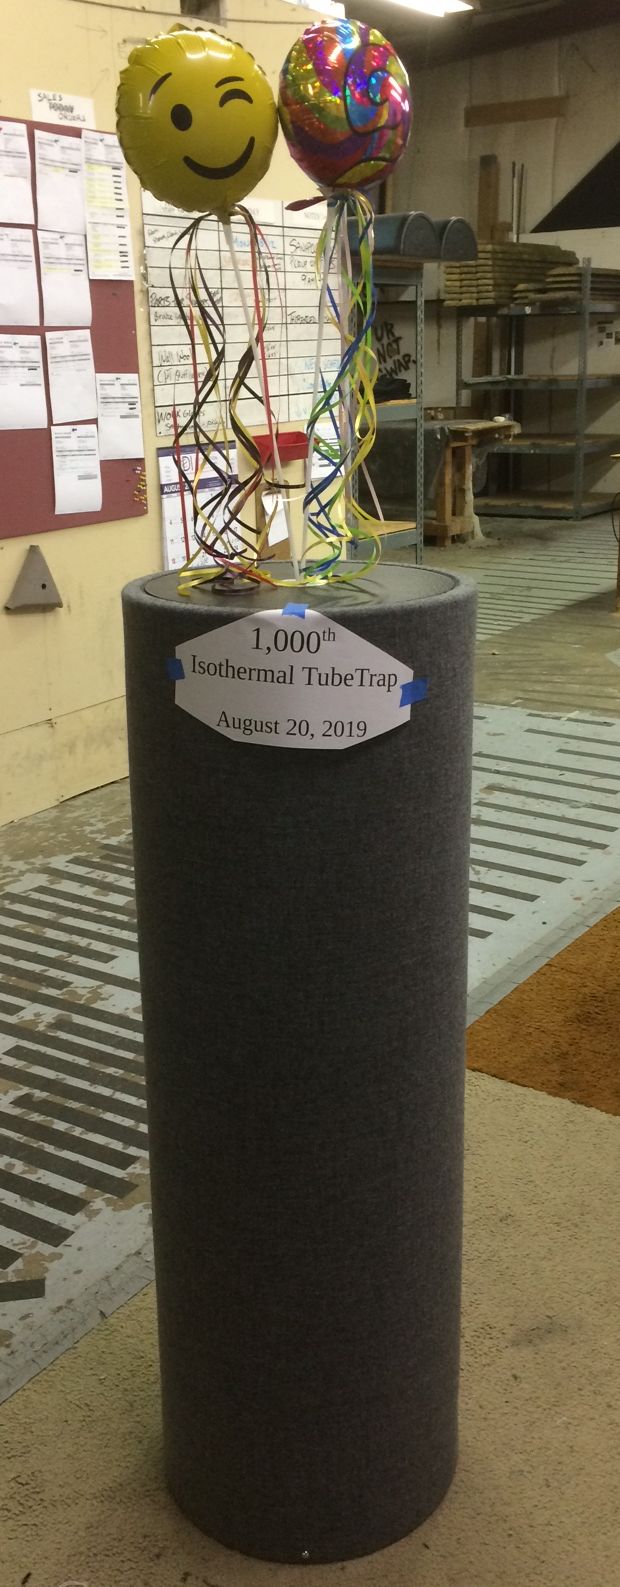 Isothermal TubeTrap Production Surpasses 1,000 Units!